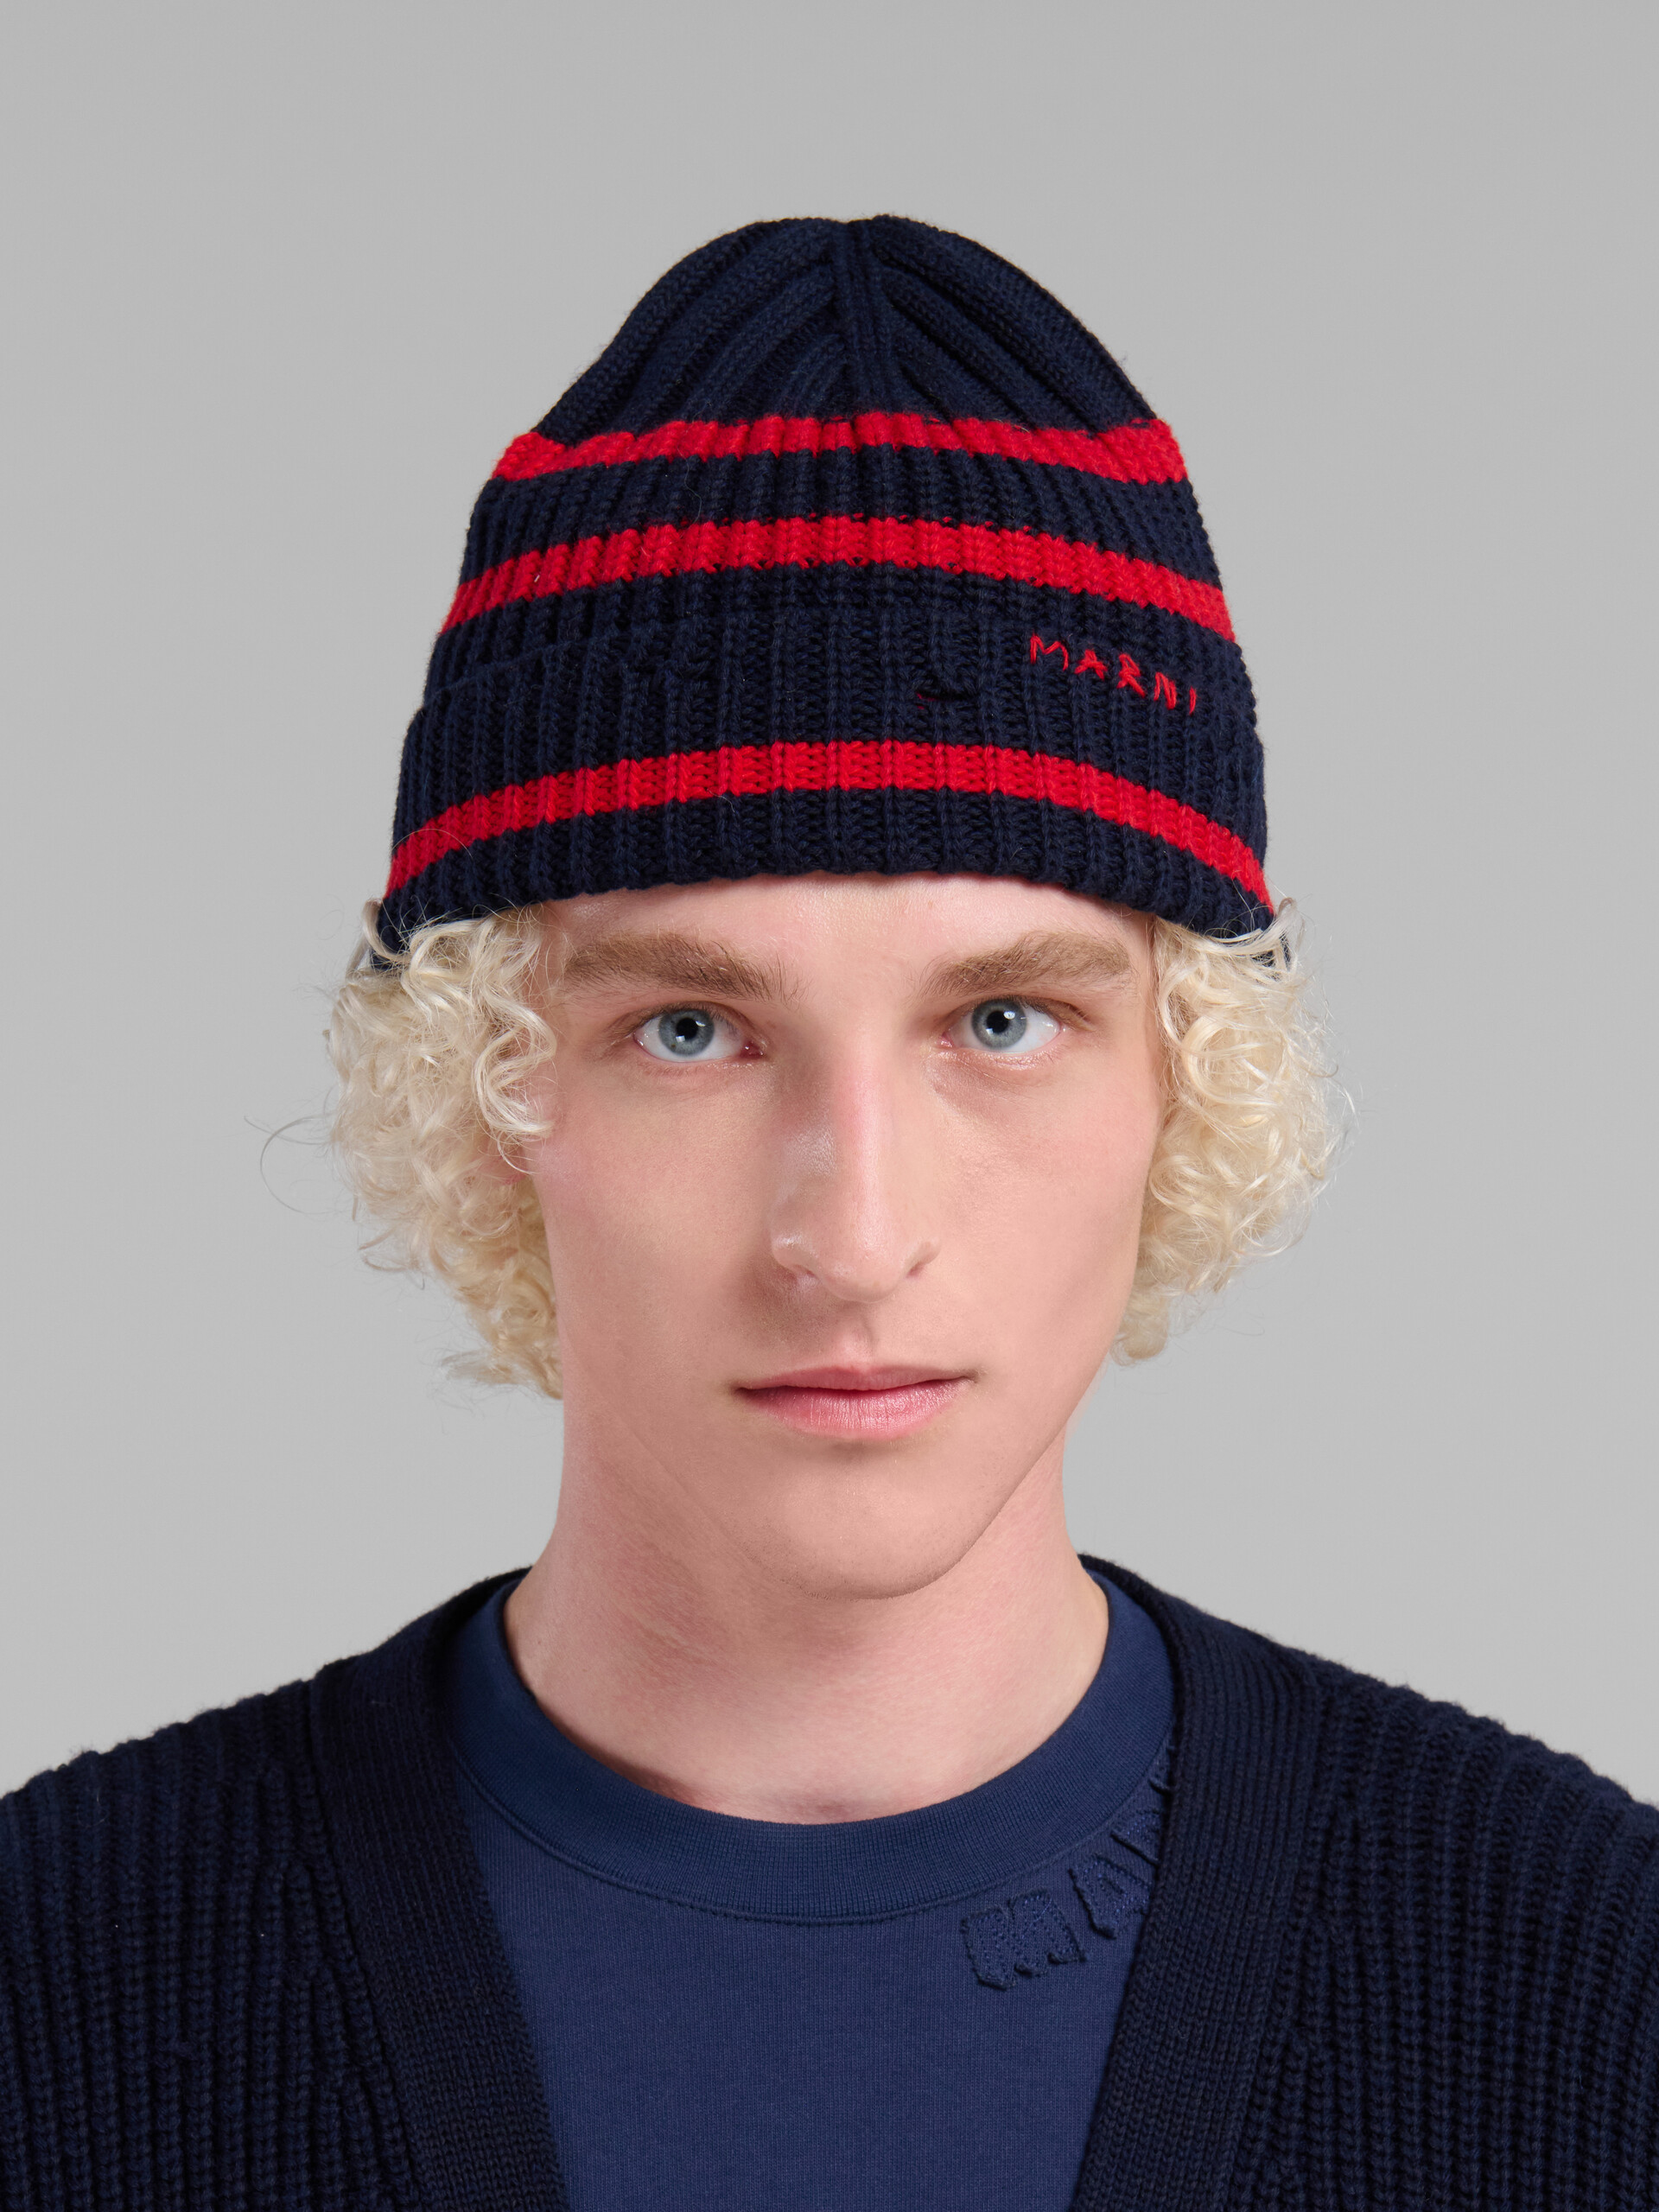 Bonnet en laine côtelée bleu marine avec rayures de style marinière - Chapeau - Image 2